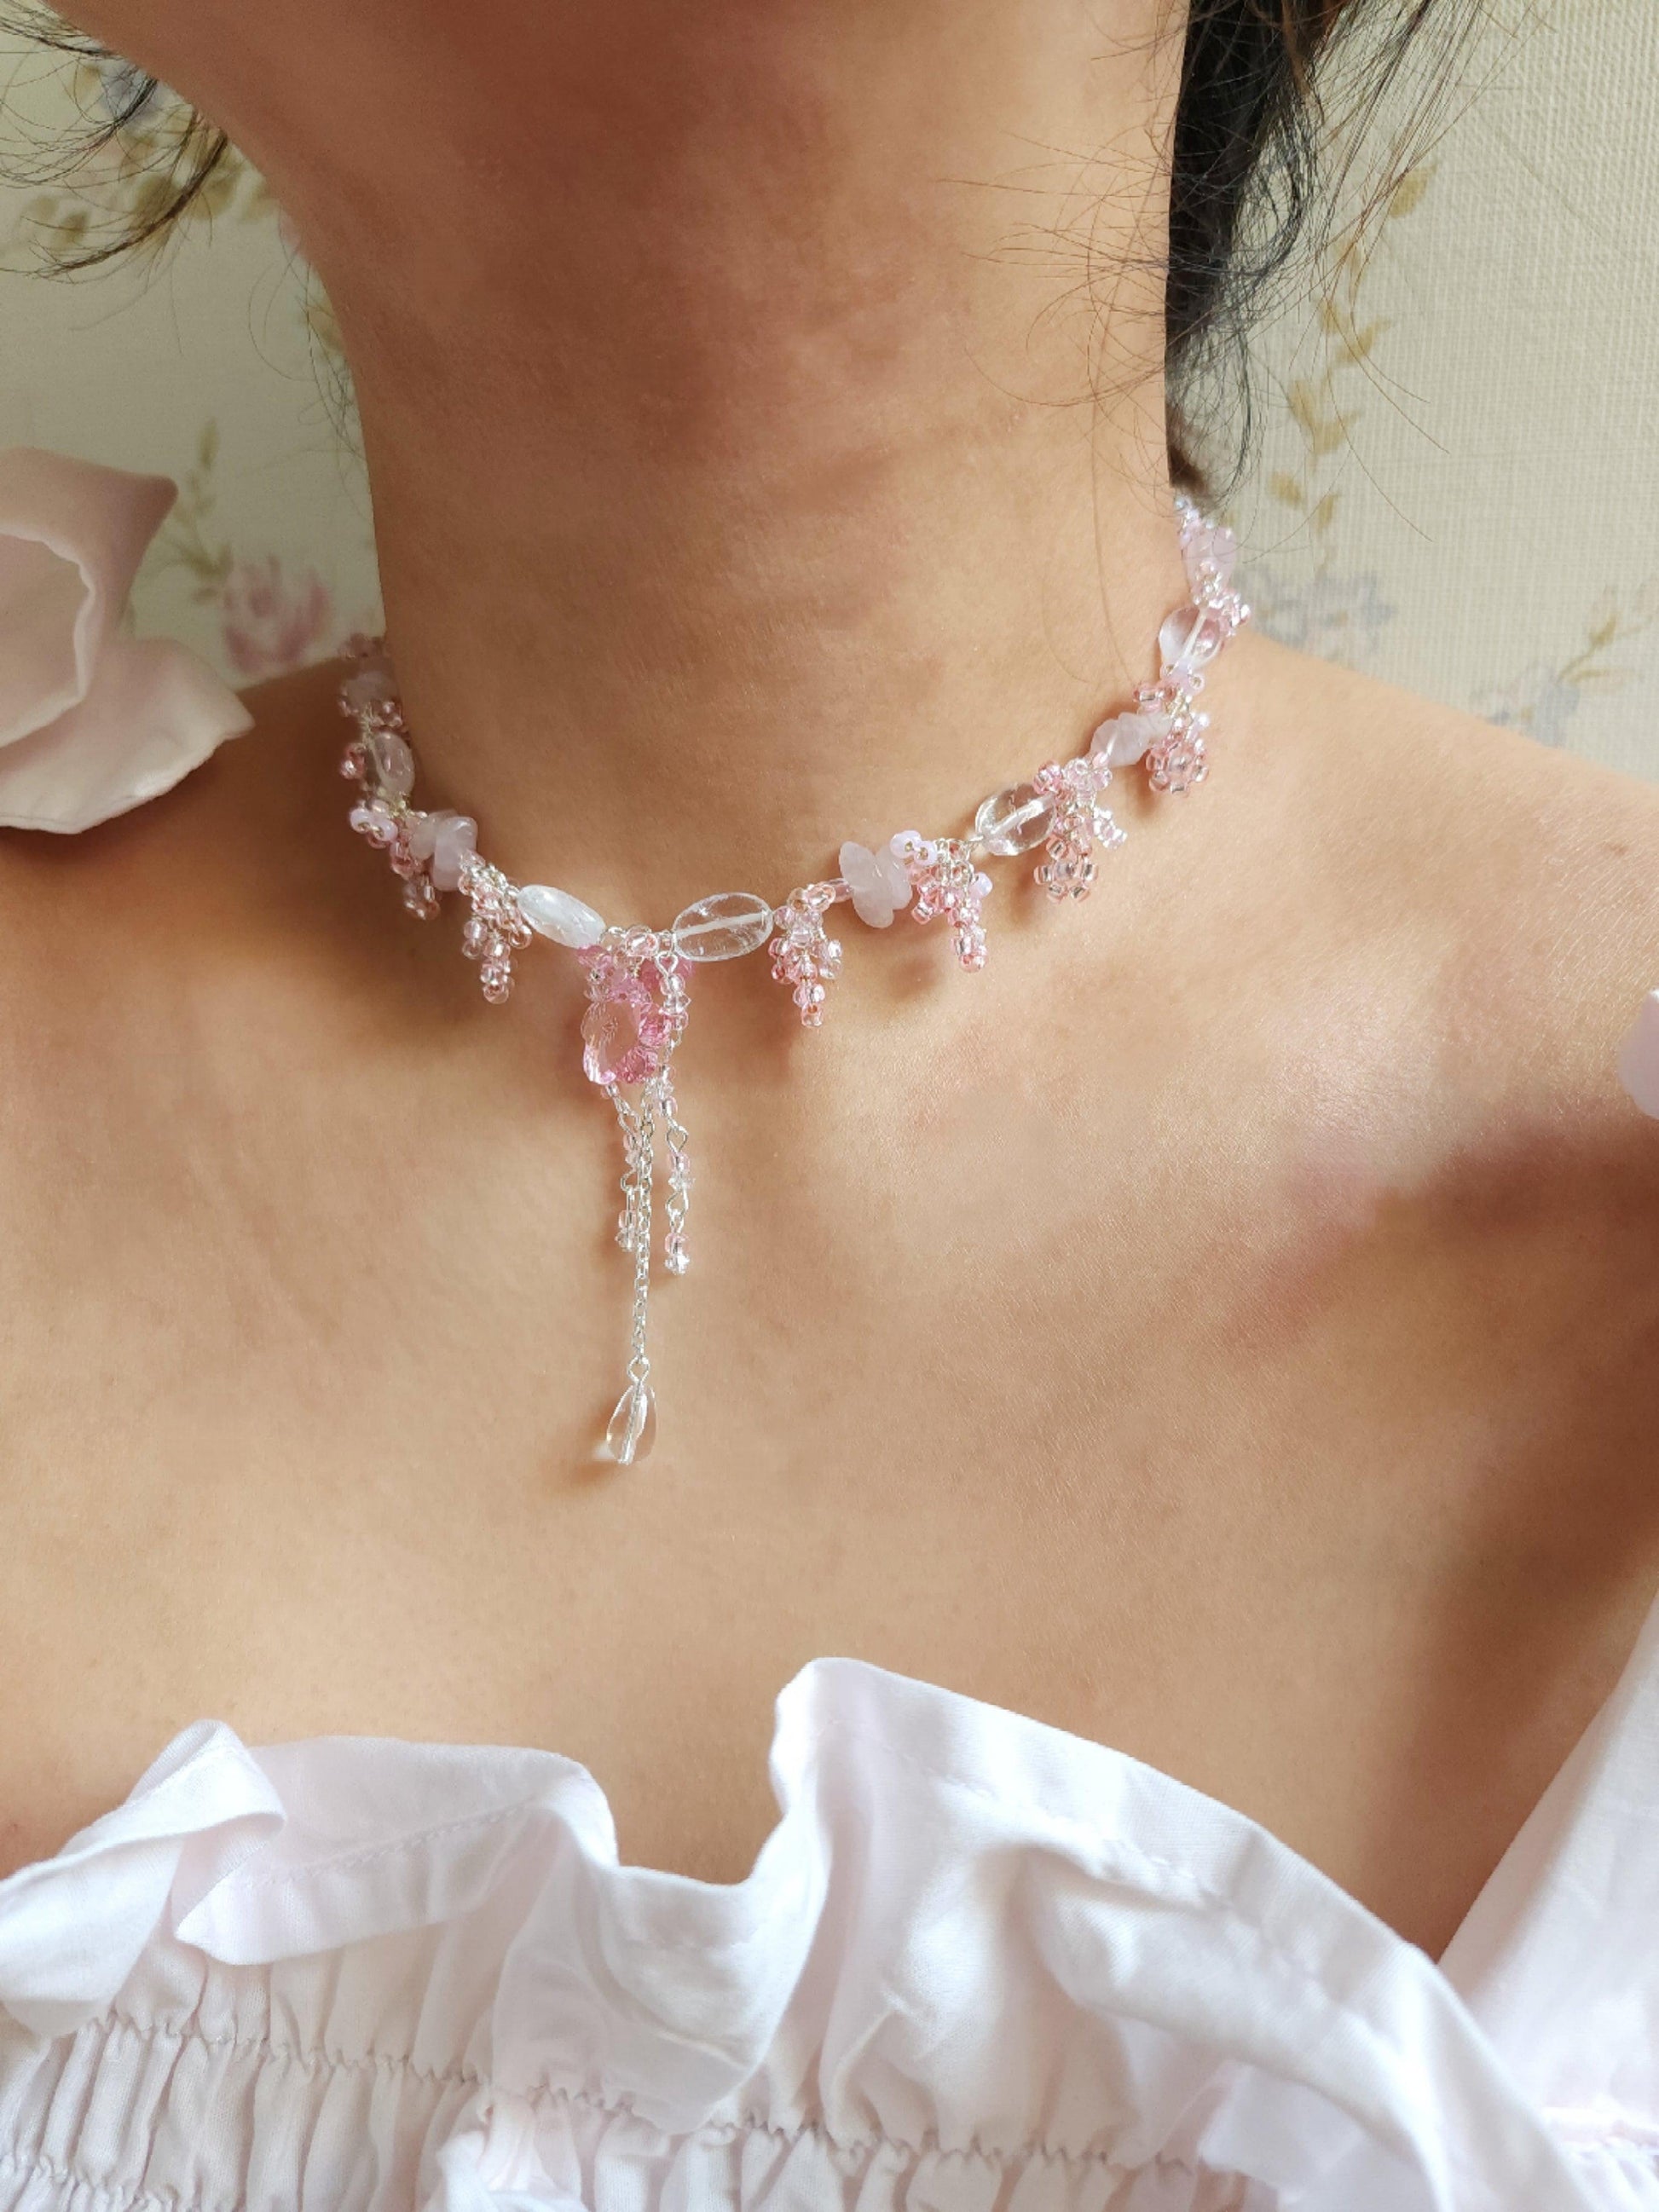 Silver Petunias Necklace - By Cocoyu